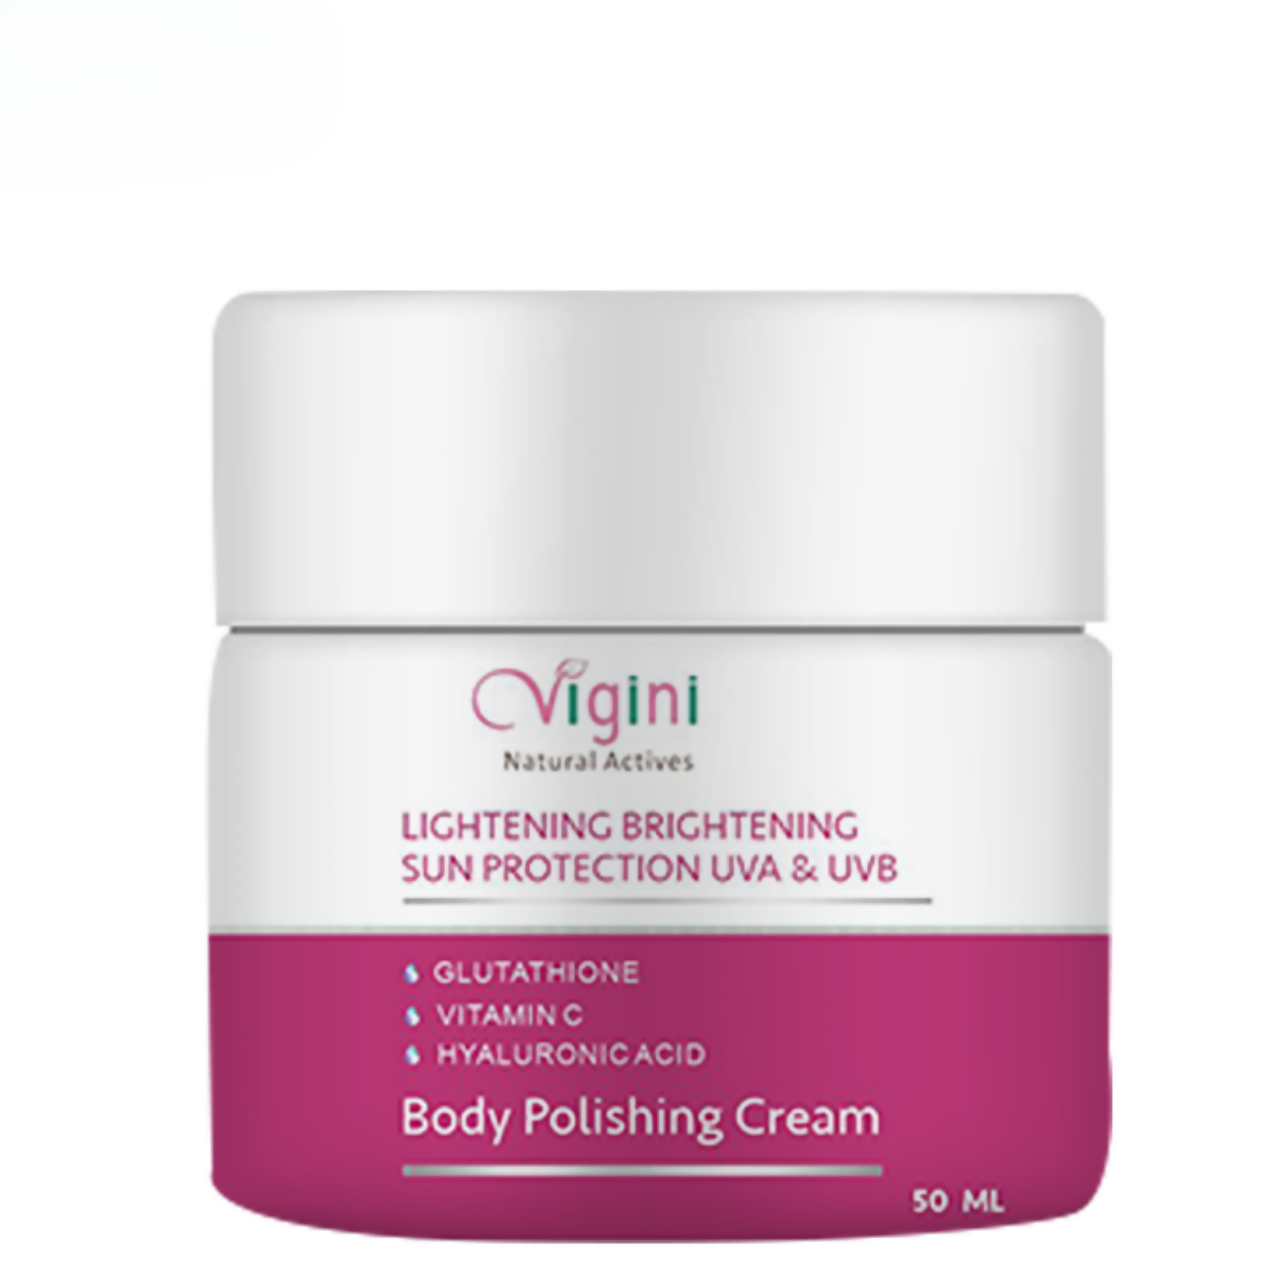 Vigini Skin Whitening Lightening Body Polishing Day Night Gel Cream - usa canada australia